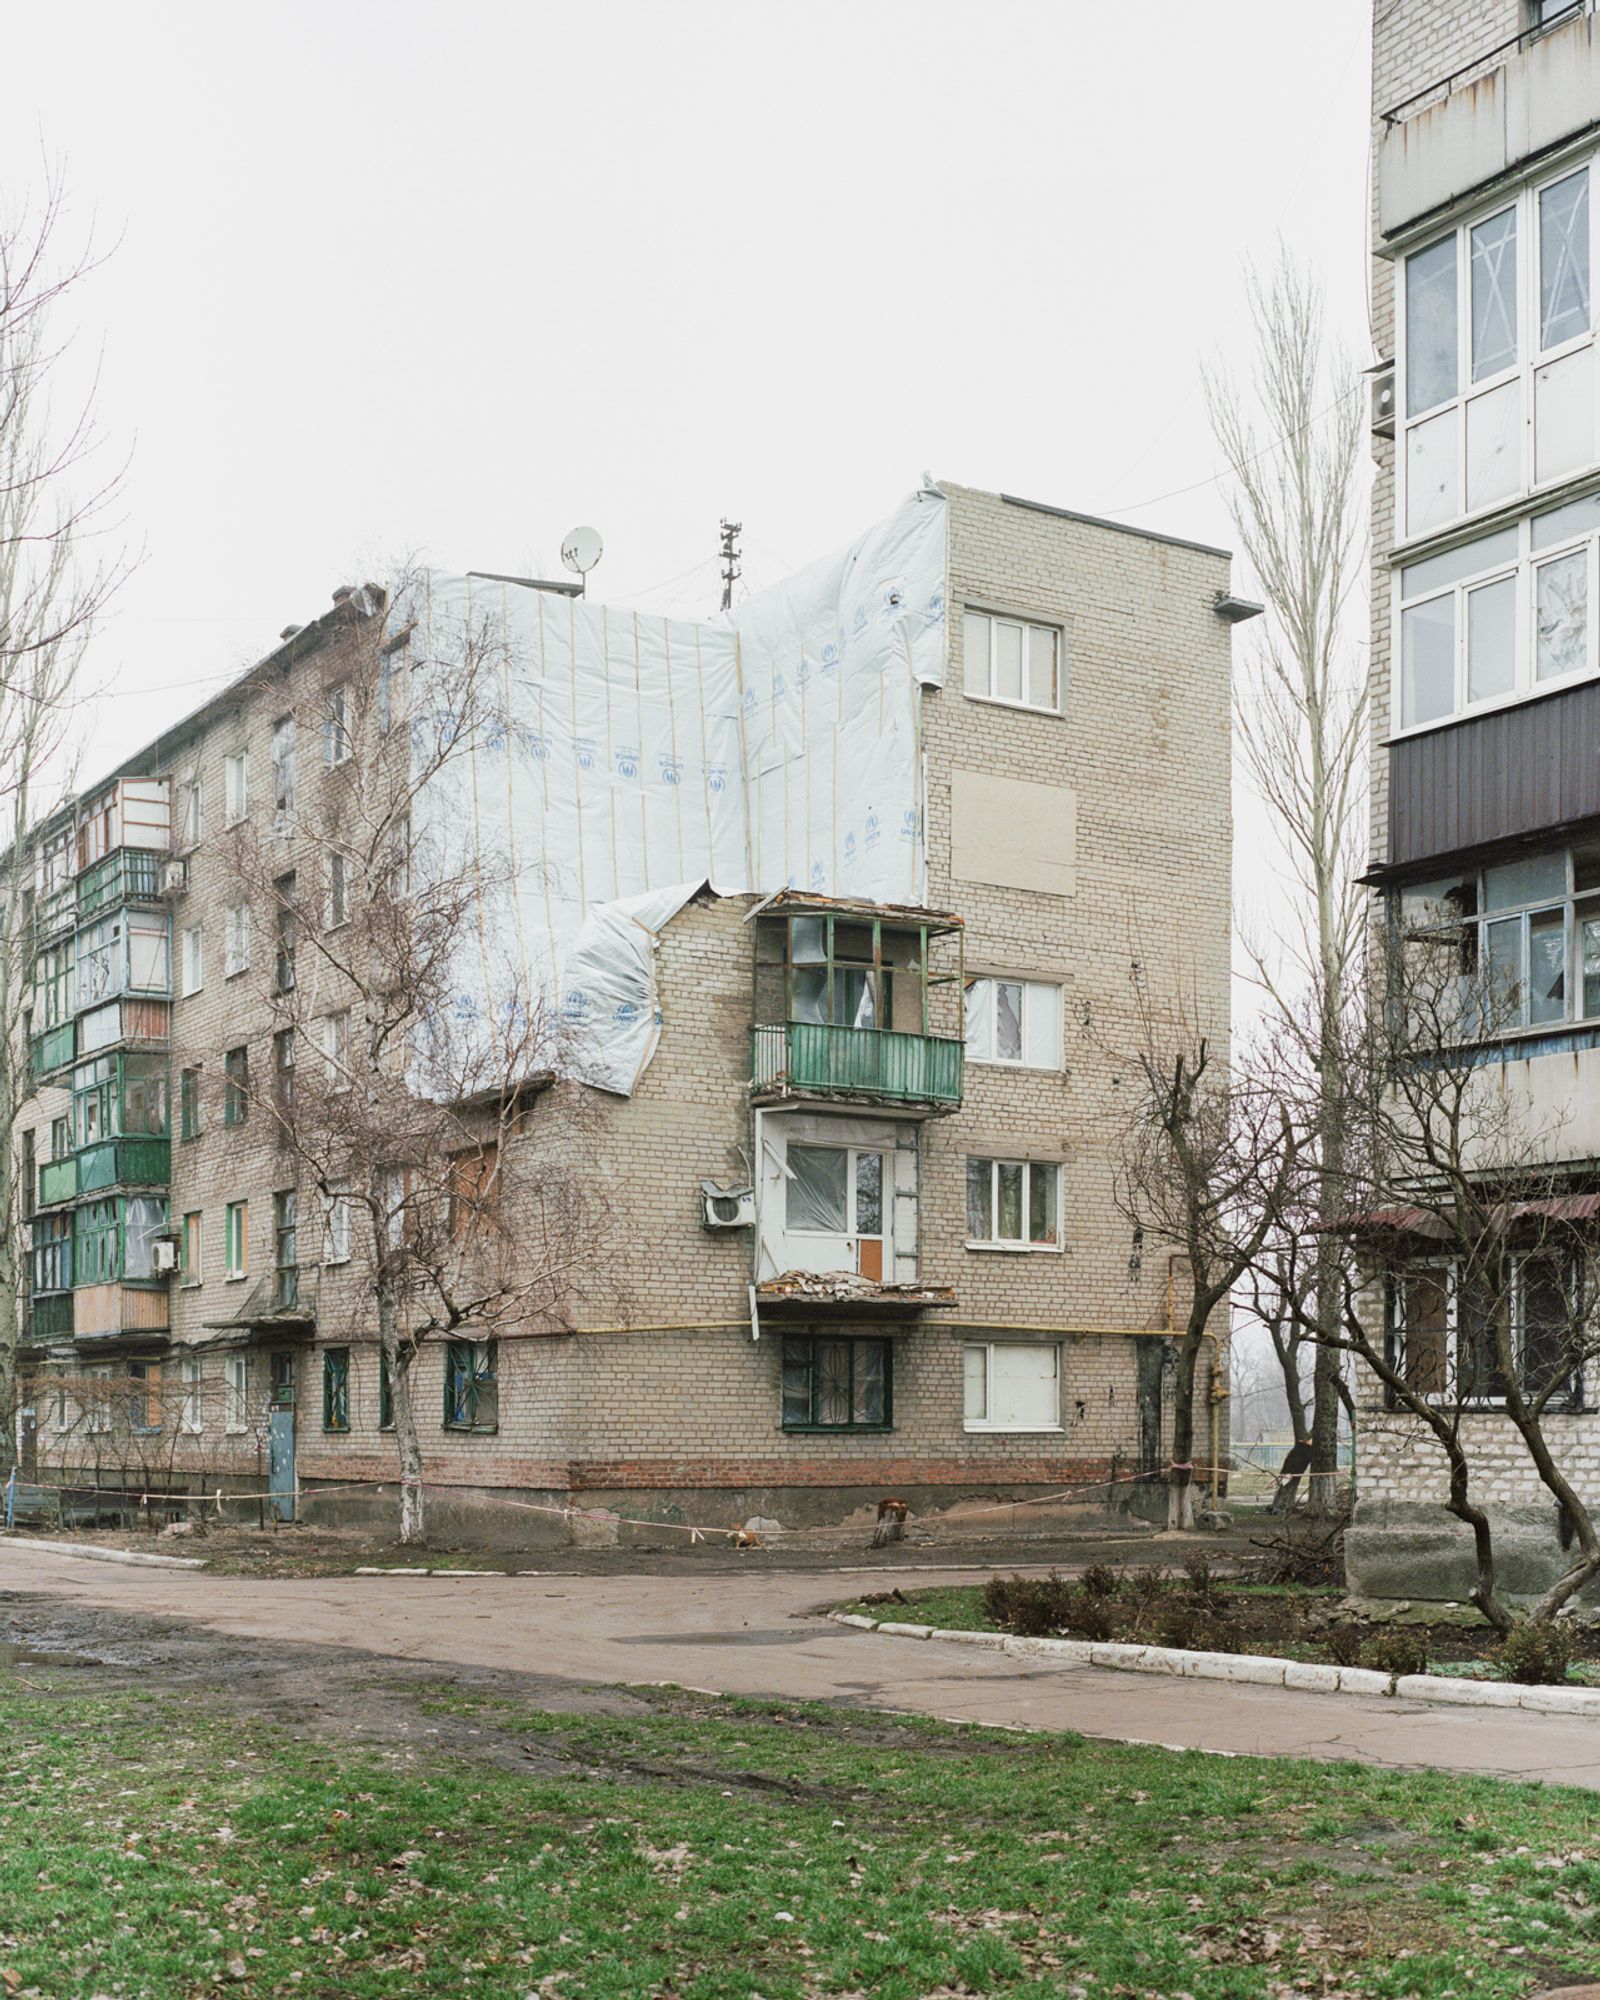 © Jan Jurczak - Inhabited block of flats damaged by artillery fire, Avdiivka, Donetsk suburbs, December 2017